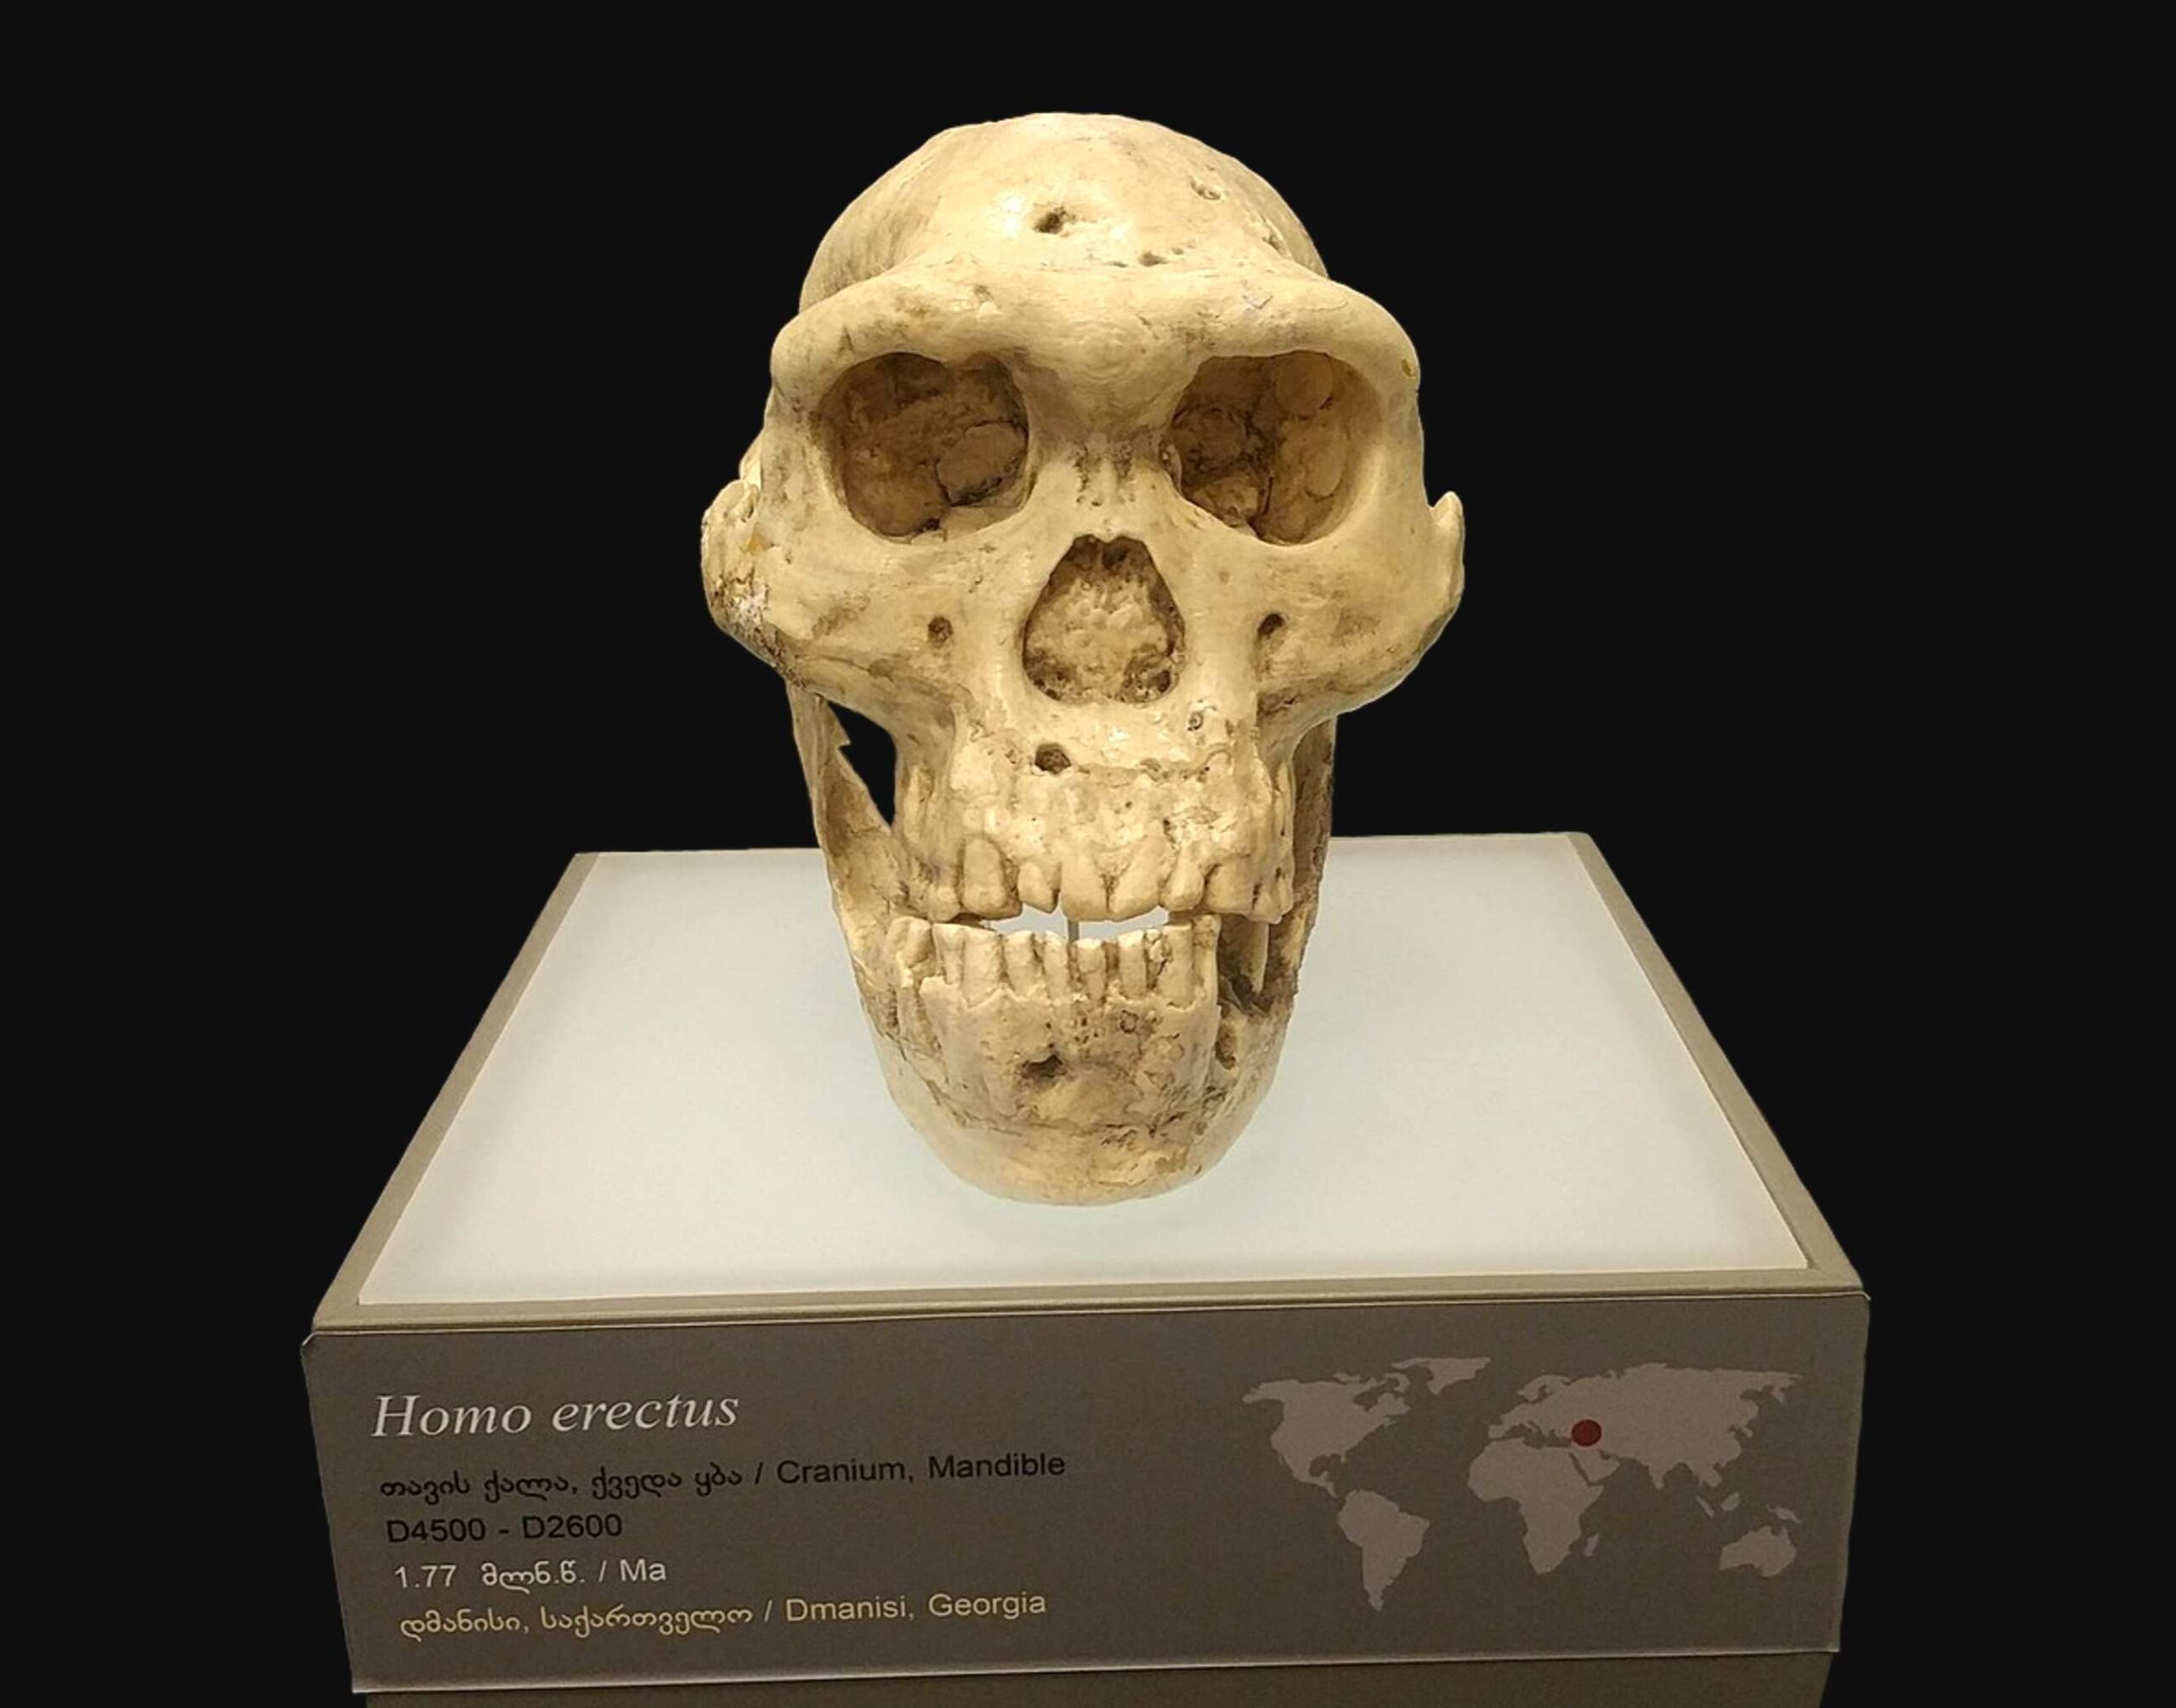 ખોપરી 5 - એક મિલિયન વર્ષ જૂની માનવ ખોપરીએ વૈજ્ scientistsાનિકોને પ્રારંભિક માનવ ઉત્ક્રાંતિ પર પુનર્વિચાર કરવાની ફરજ પડી